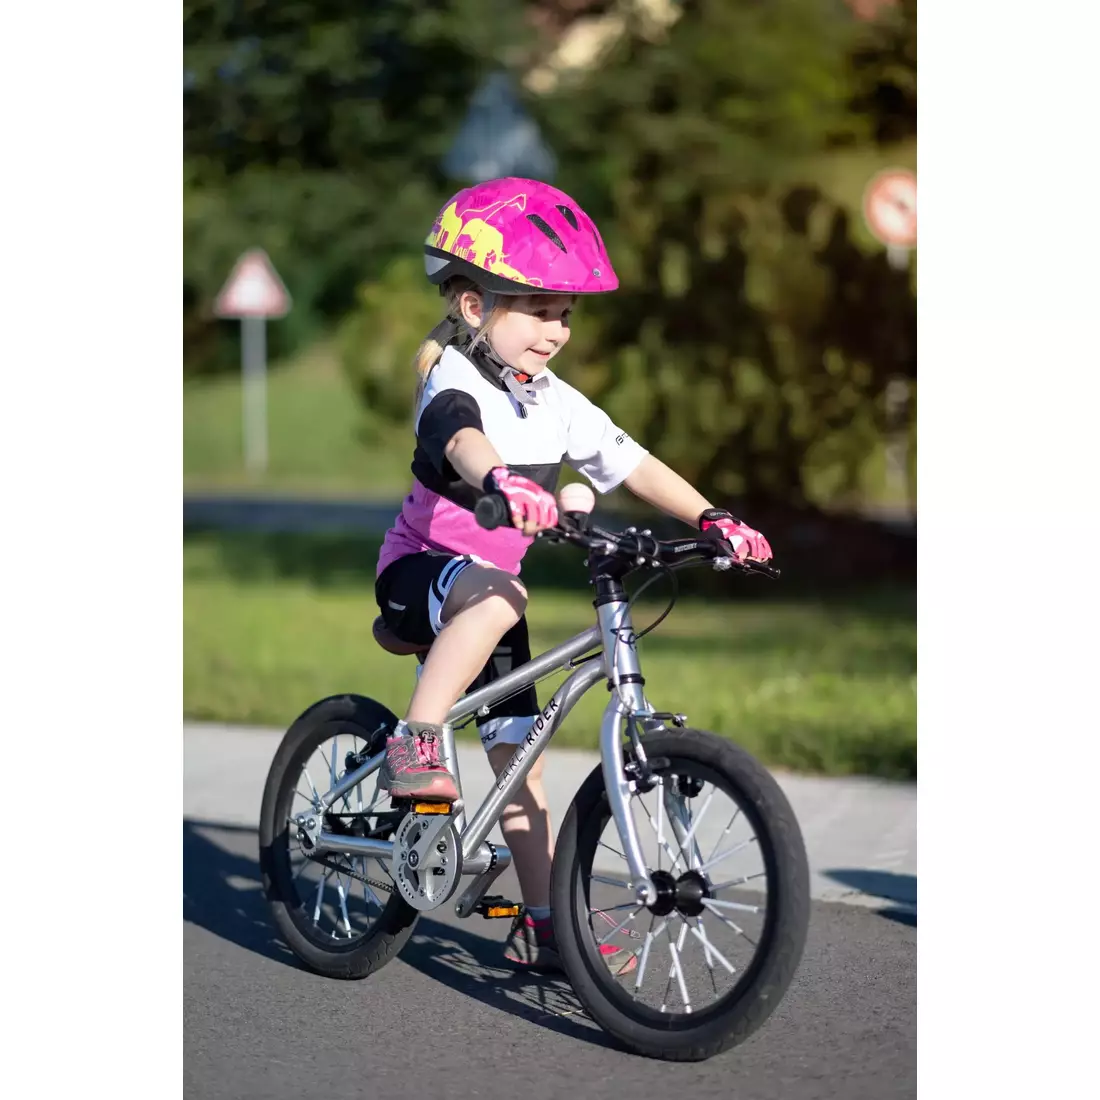 FORCE Children's bicycle helmet FUN ANIMALS, fluo-pink 9022445